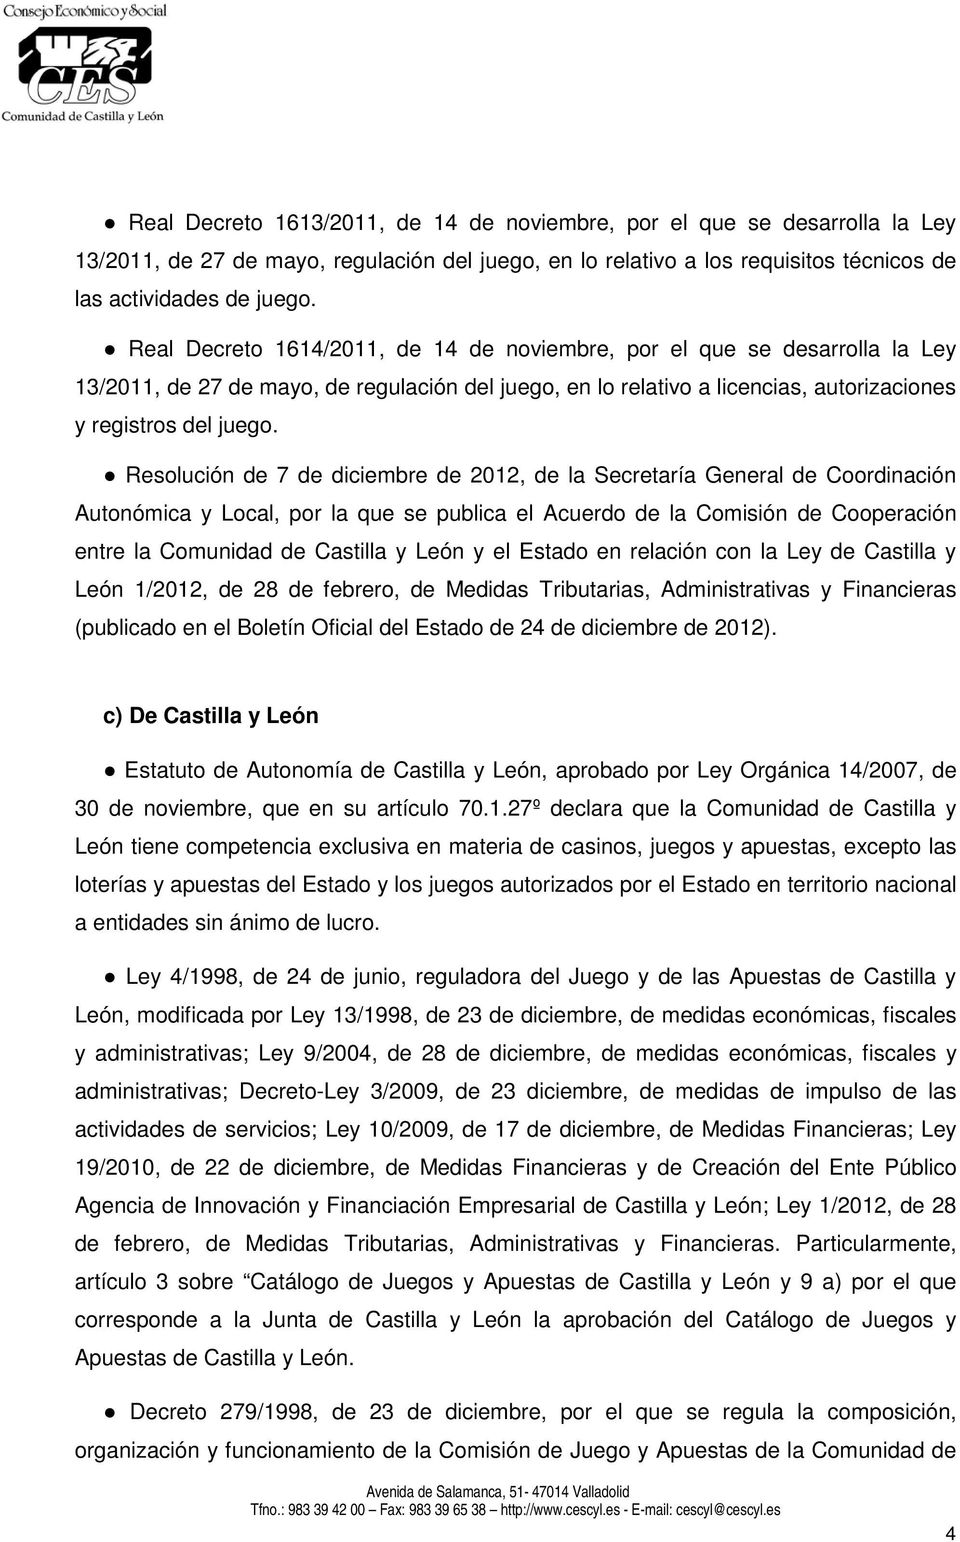 Resolución de 7 de diciembre de 2012, de la Secretaría General de Coordinación Autonómica y Local, por la que se publica el Acuerdo de la Comisión de Cooperación entre la Comunidad de Castilla y León